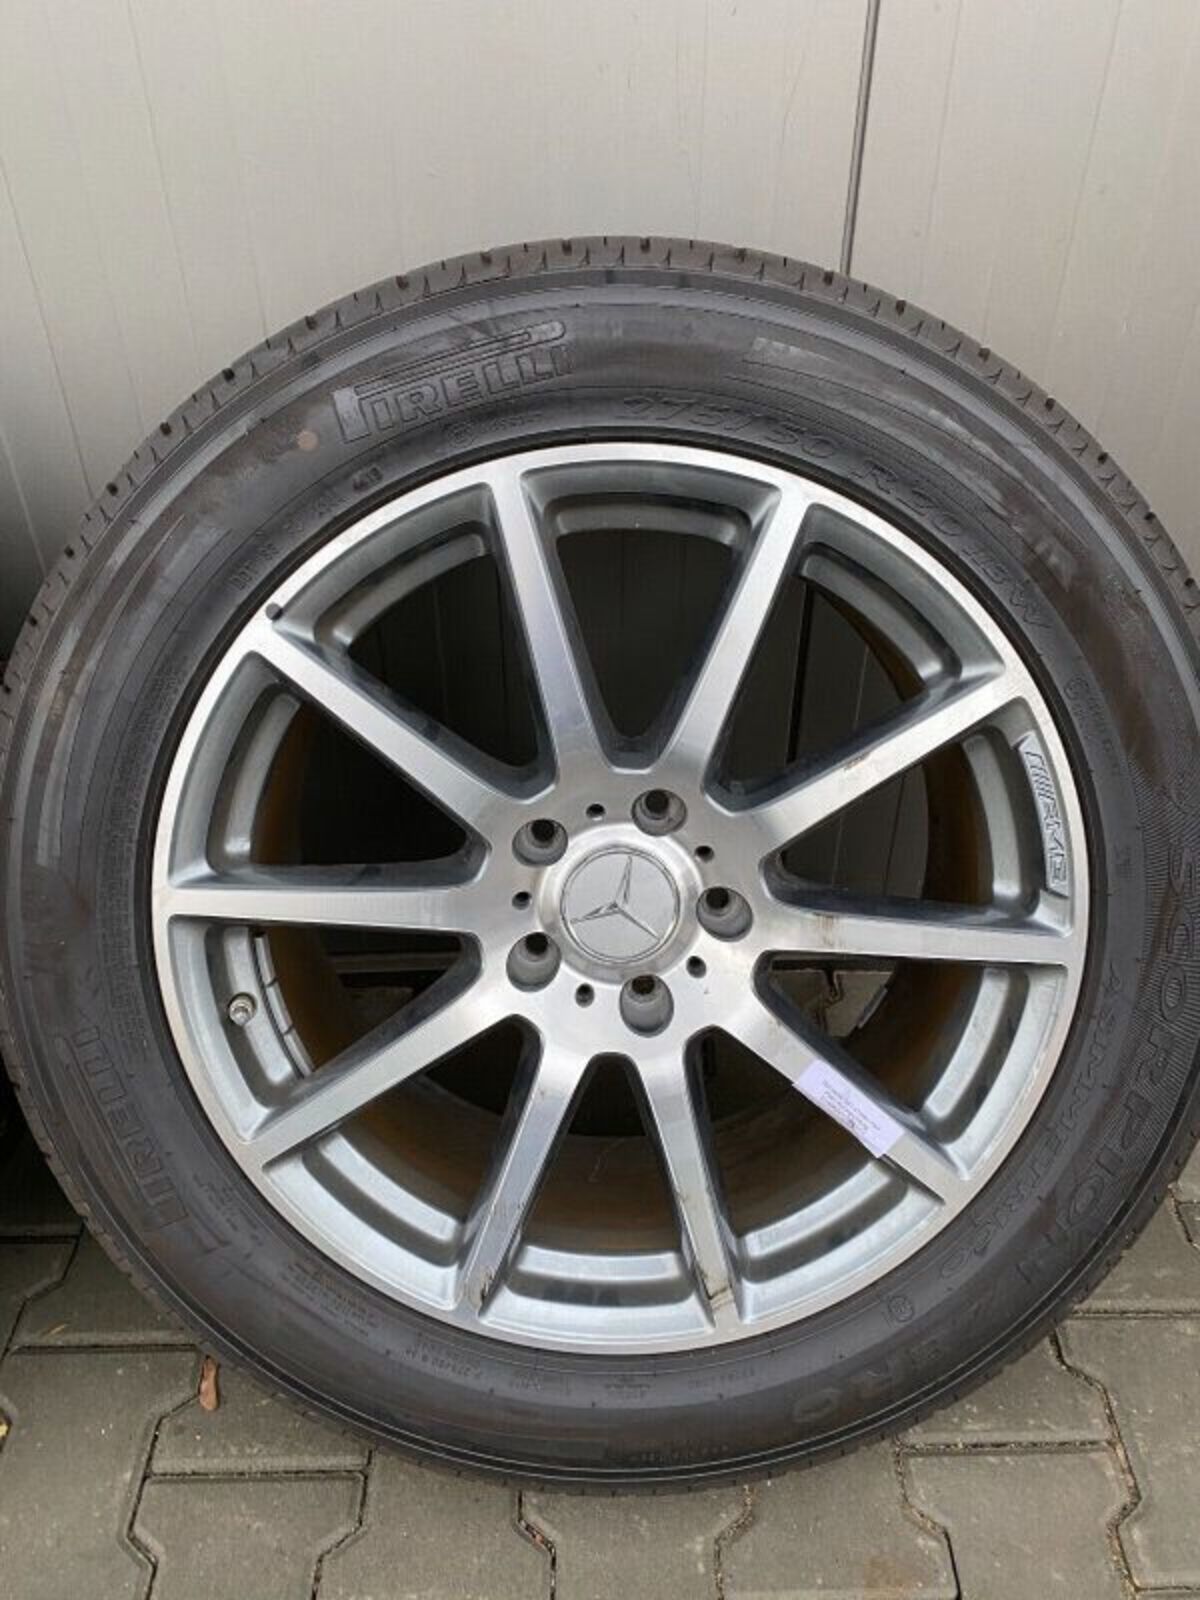 MERCEDES G63 G KLASSE Rader satz wheels set 20 inch 354830089339 5